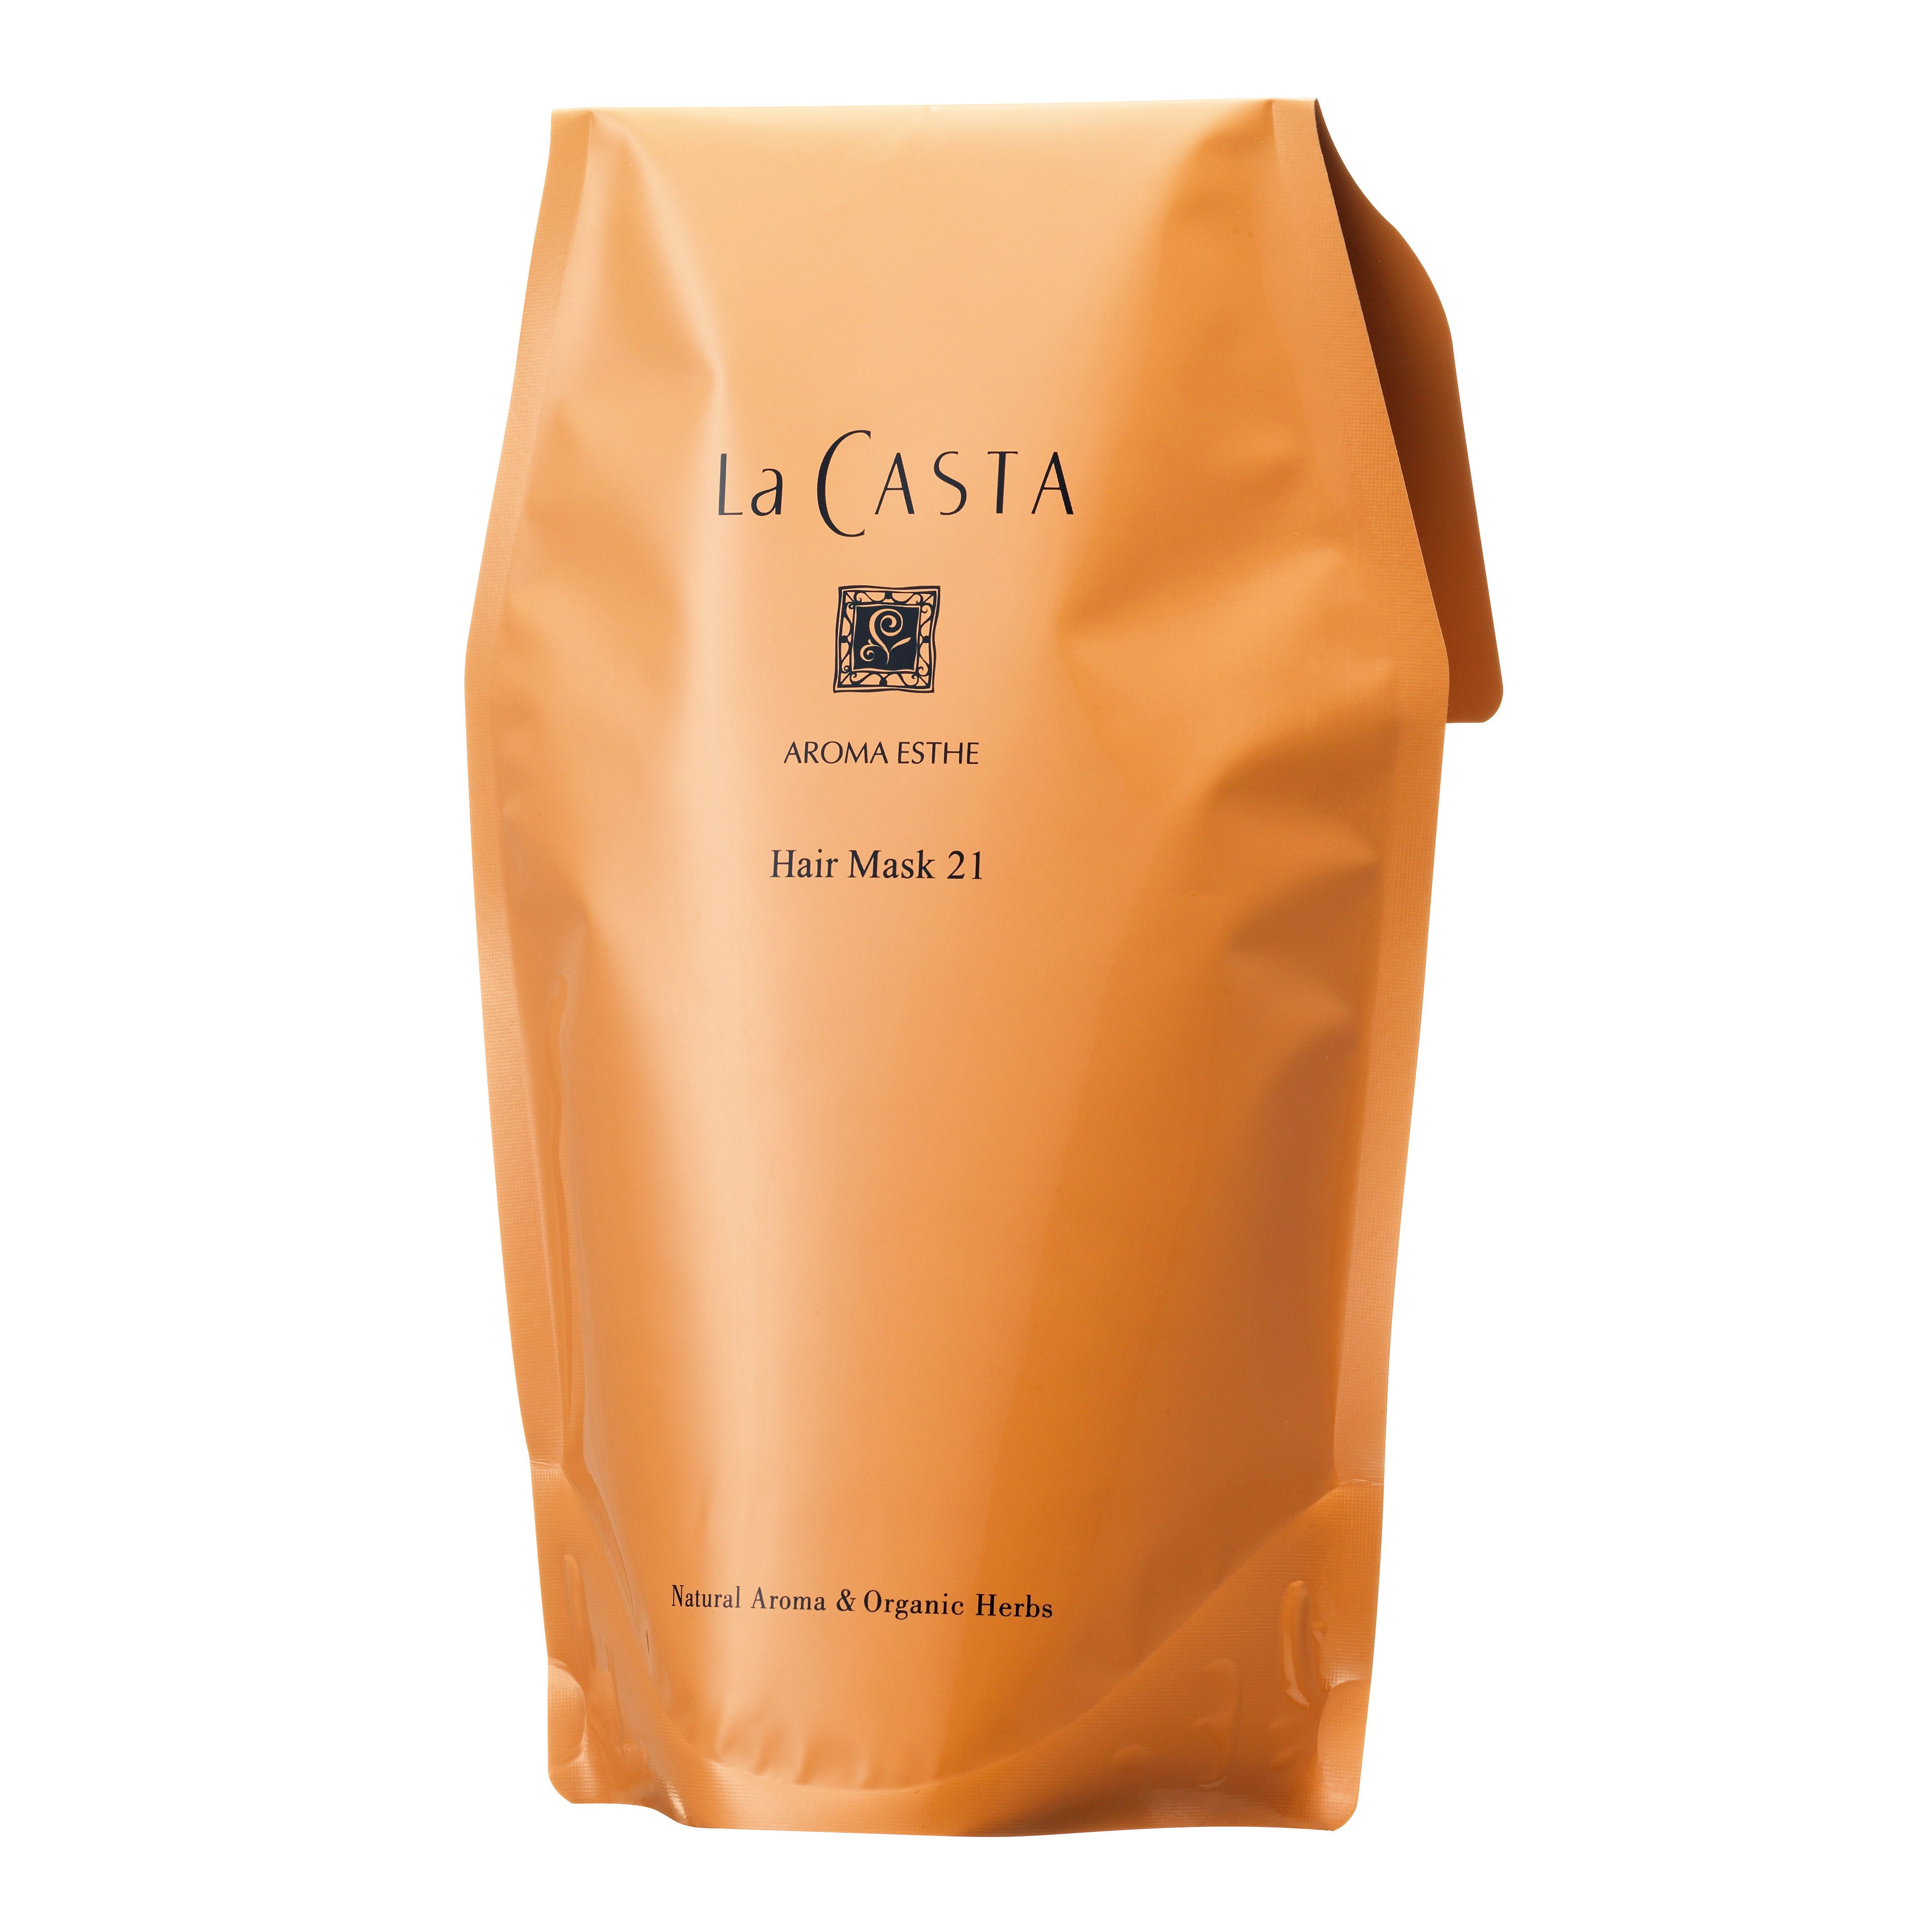 ラカスタ アロマエステヘアマスク21詰替 【LaCasta】ラ・カスタのバリエーション3